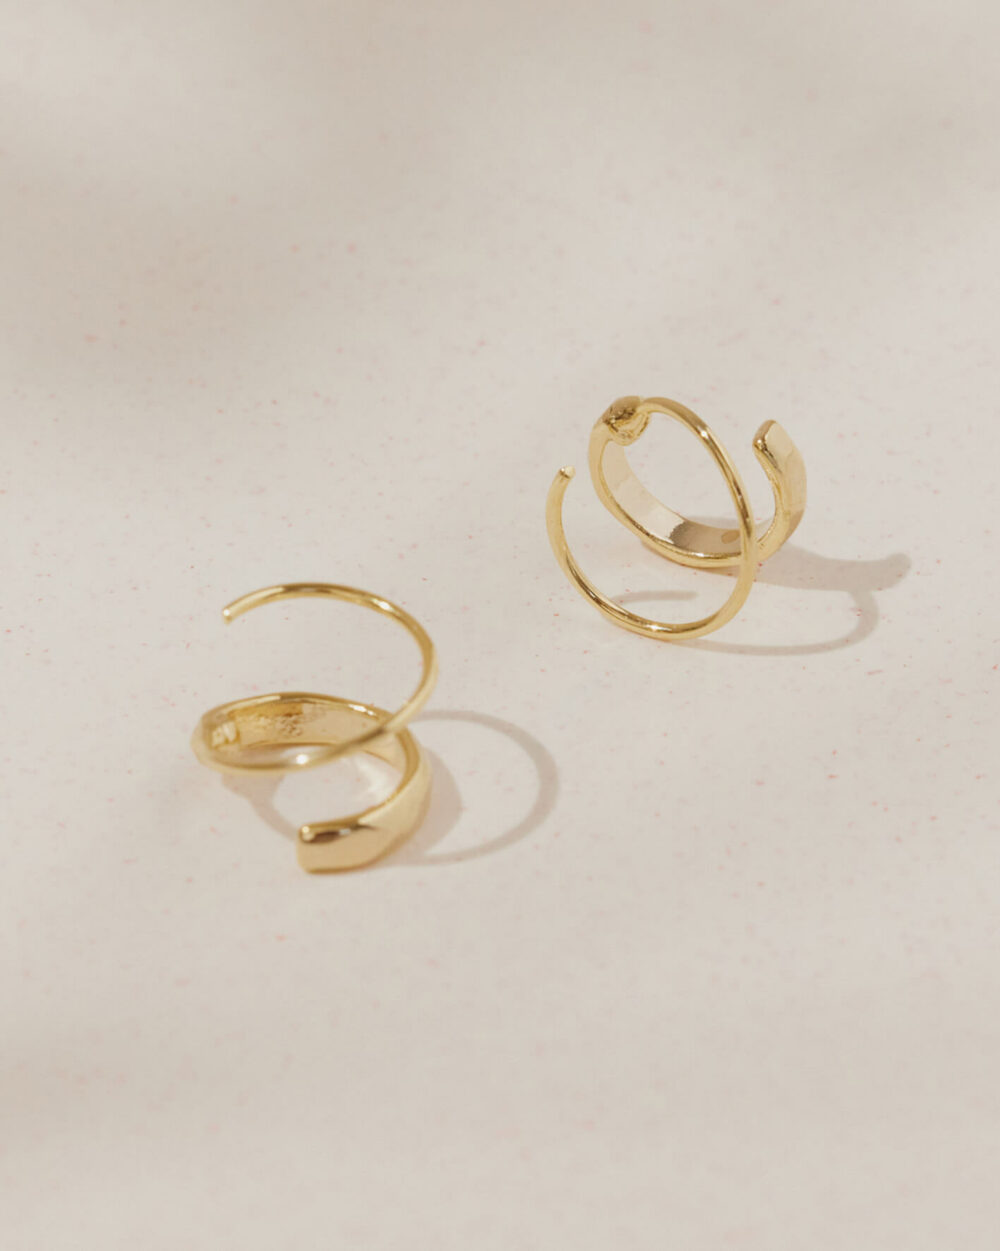 Eco安珂,韓國飾品,韓國耳環,耳針式耳環,個性耳環,旋轉耳環